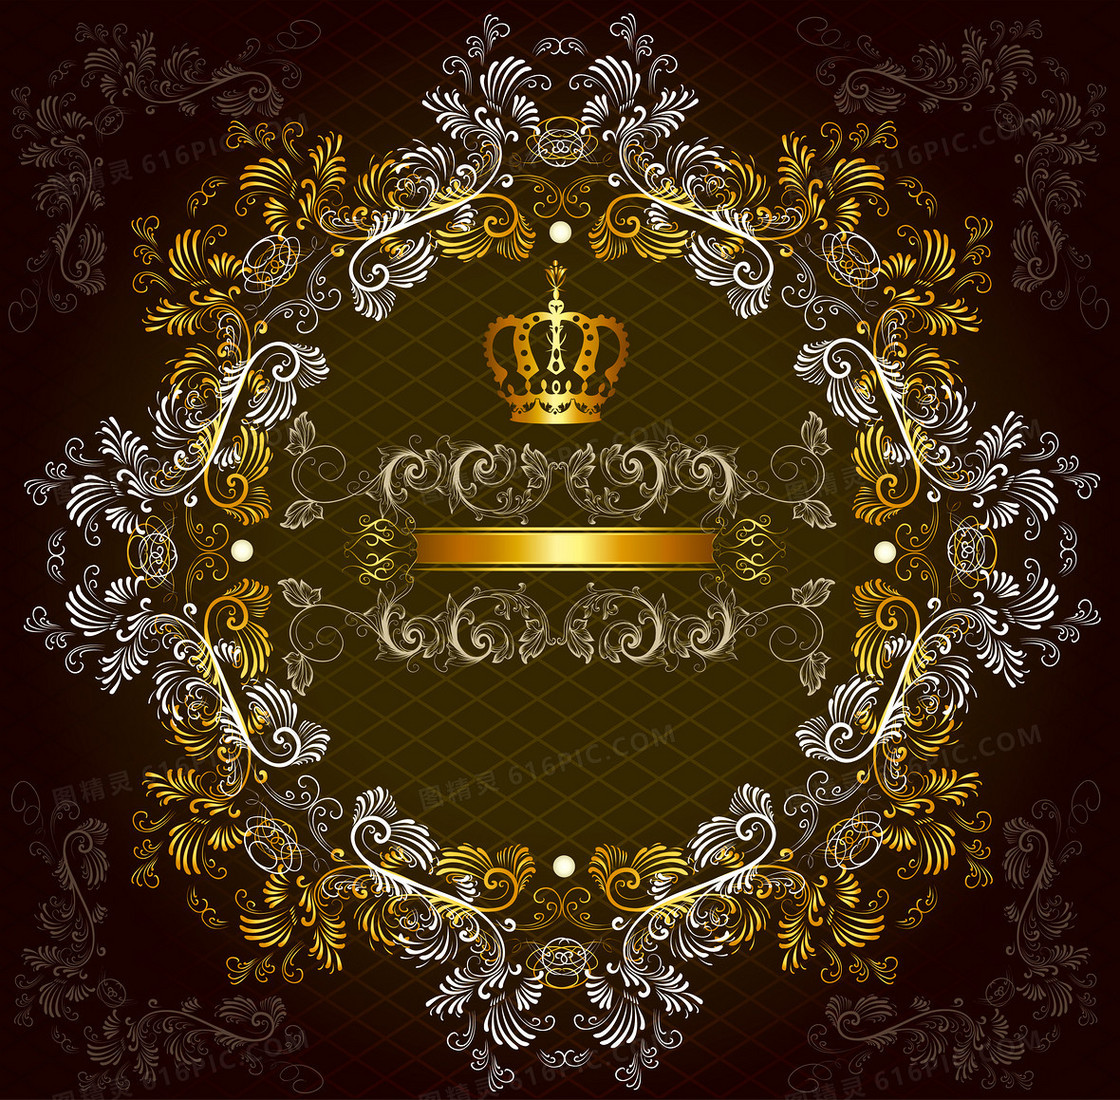 欧式花纹皇冠古典背景素材